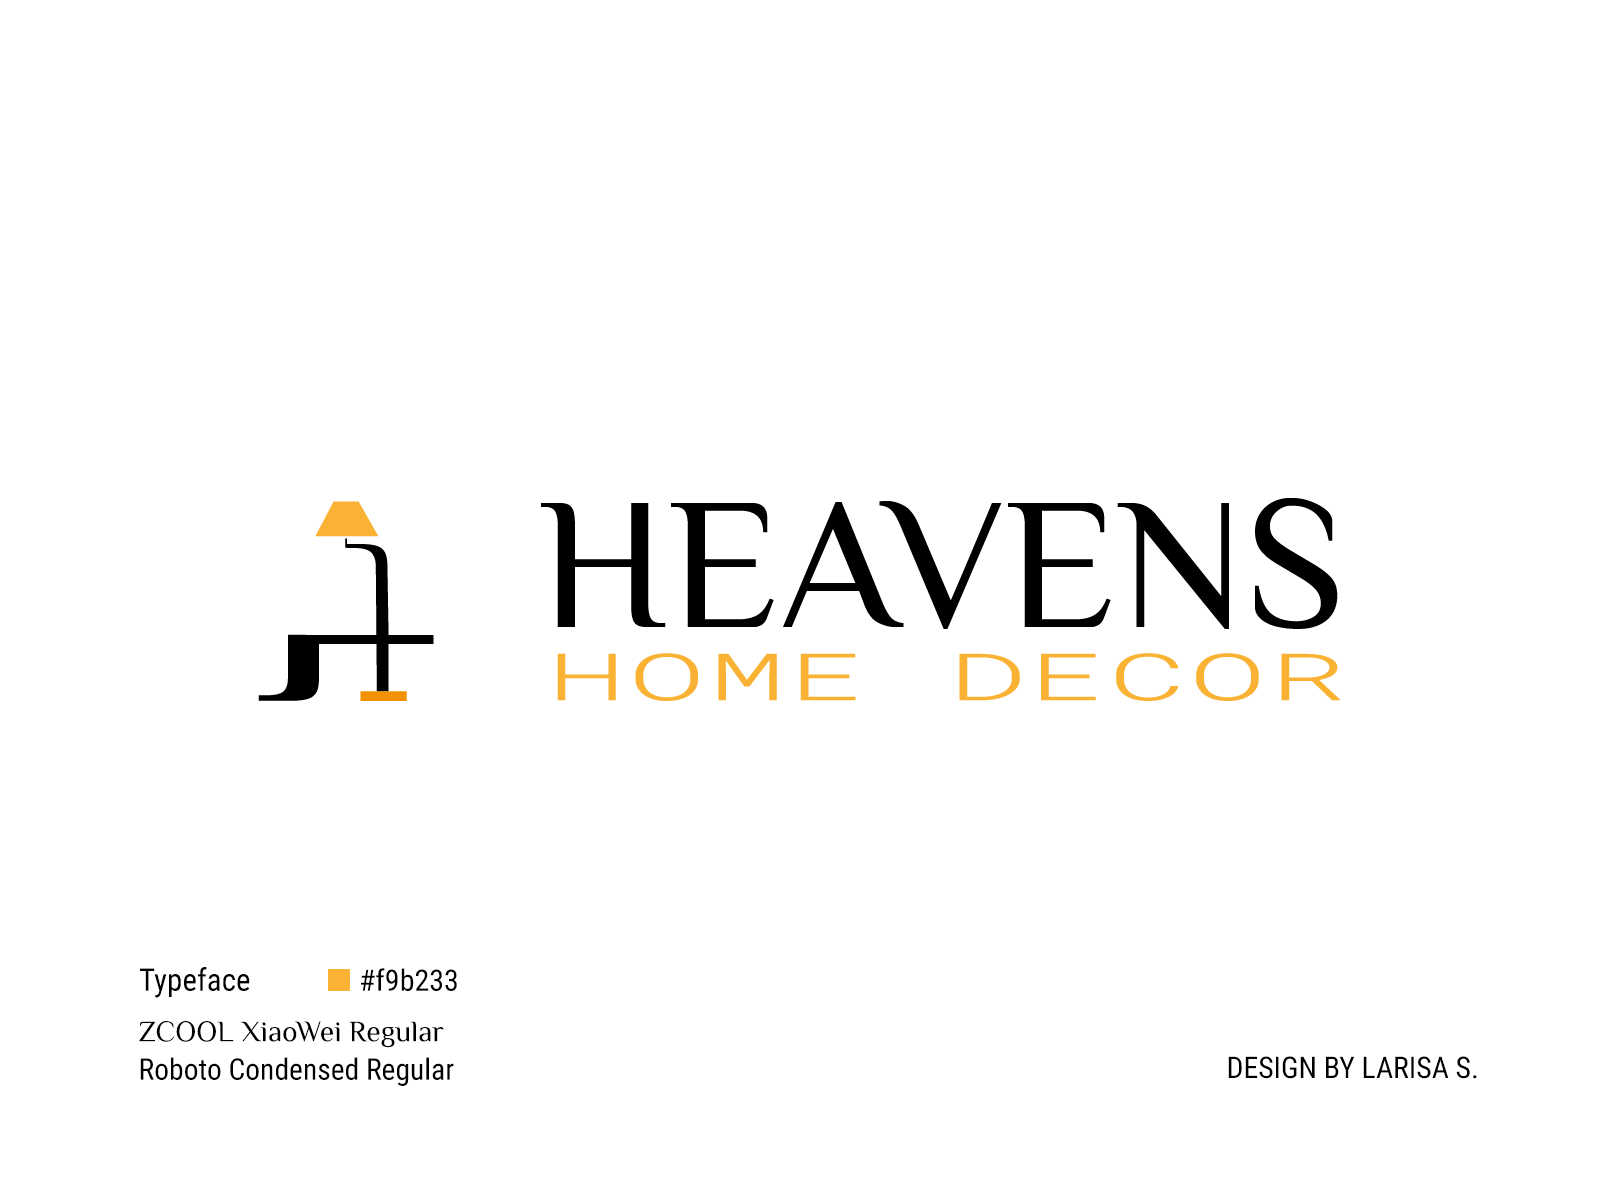 Heavens Home Decor adobe illustrator brand logo branding design graphic design logo